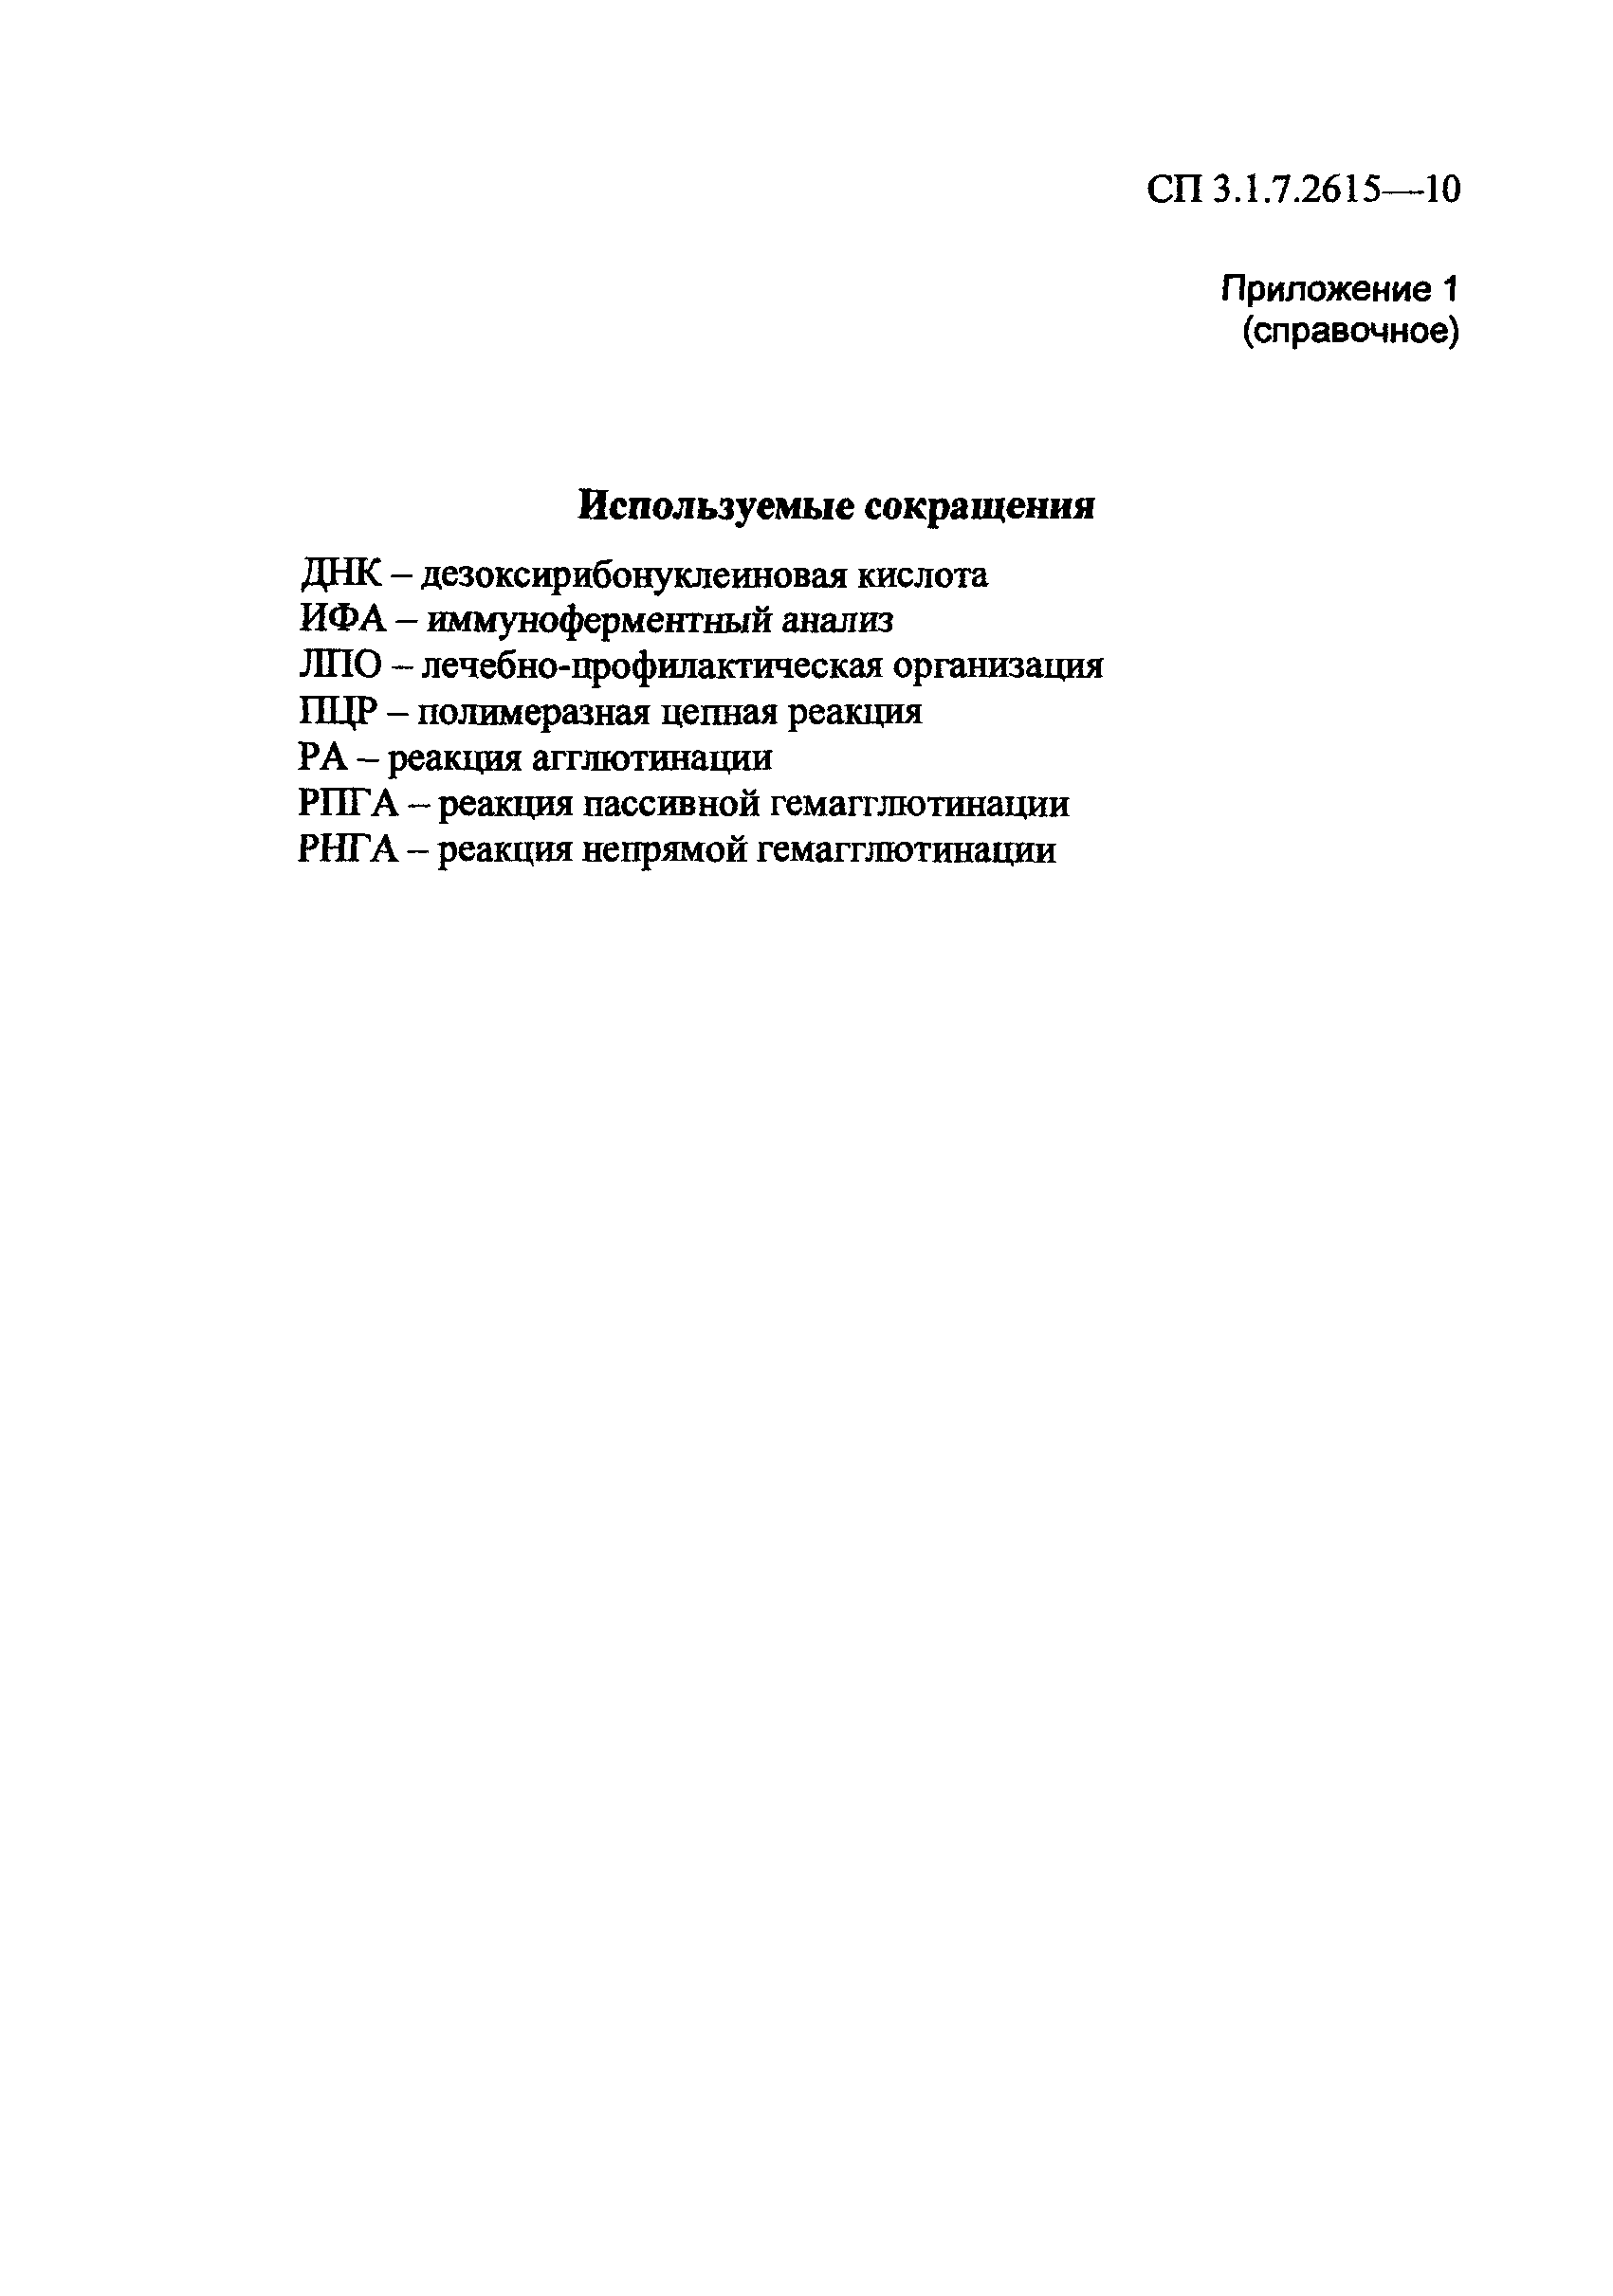 СП 3.1.7.2615-10